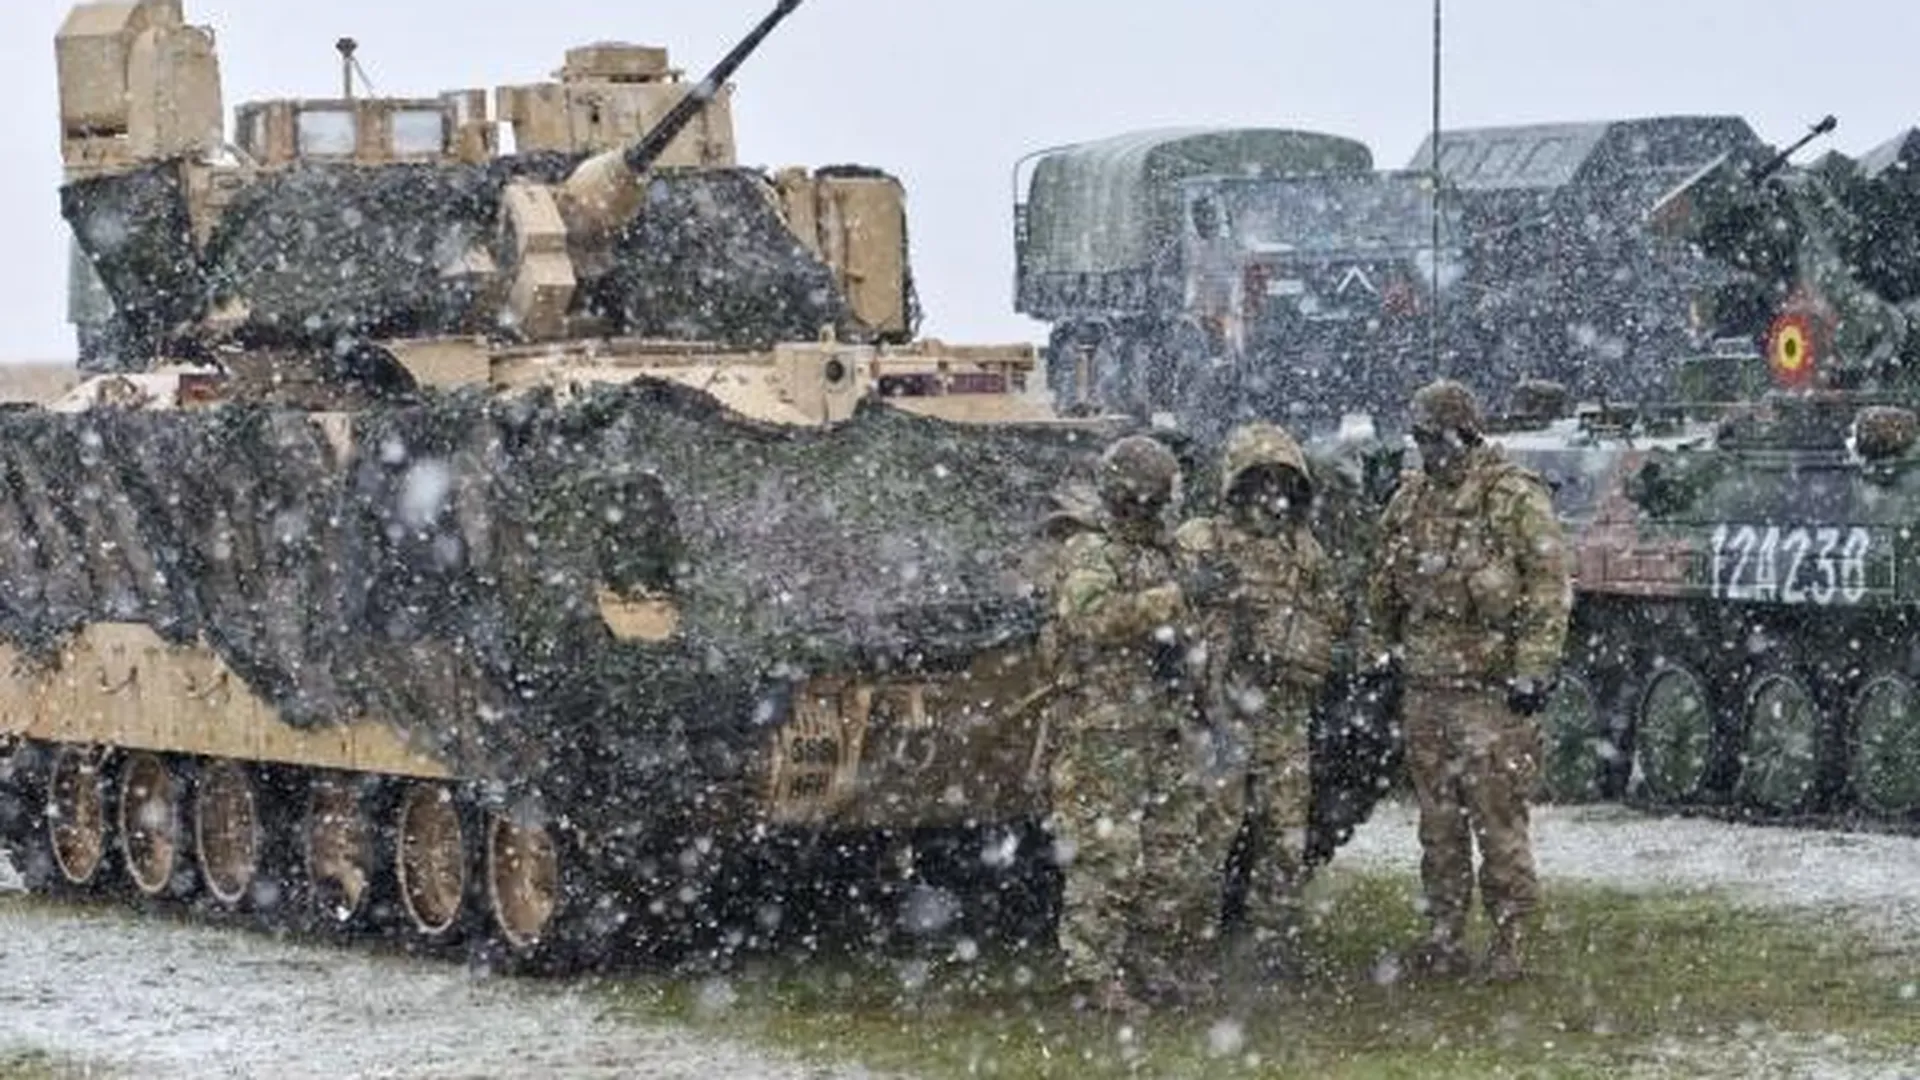 Военнослужащие возле американской боевой машины пехоты M2 Bradley во время совместных учений армий США и Румынии в рамках операции «Атлантическая решимость»